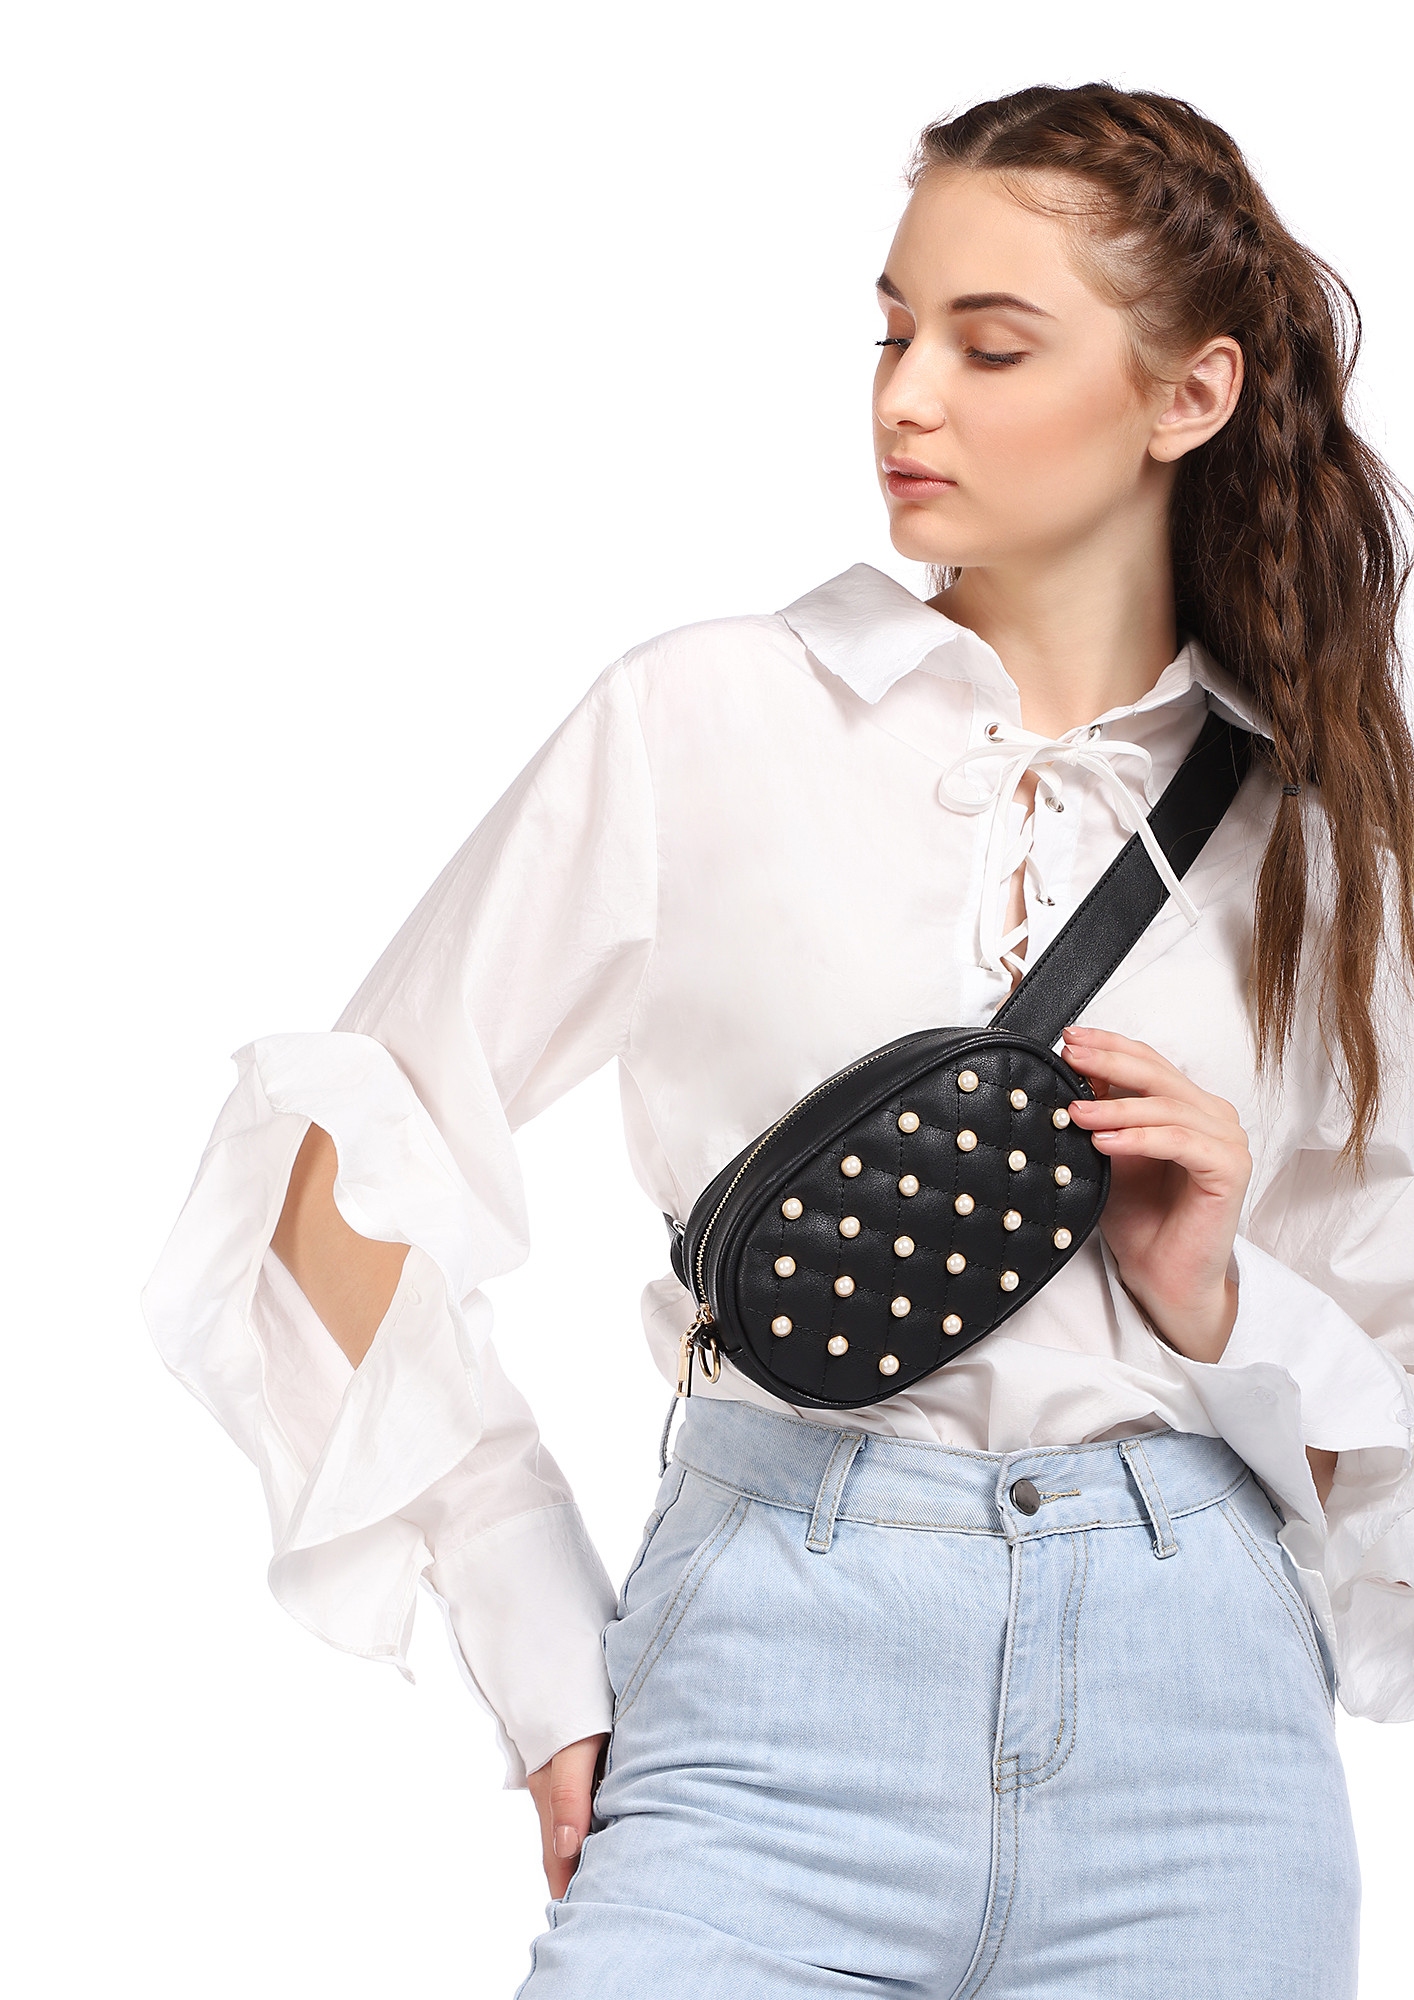 Leather Fanny Pack for Women Hip Bum Waist Bags Crossbody Waist Purse | eBay